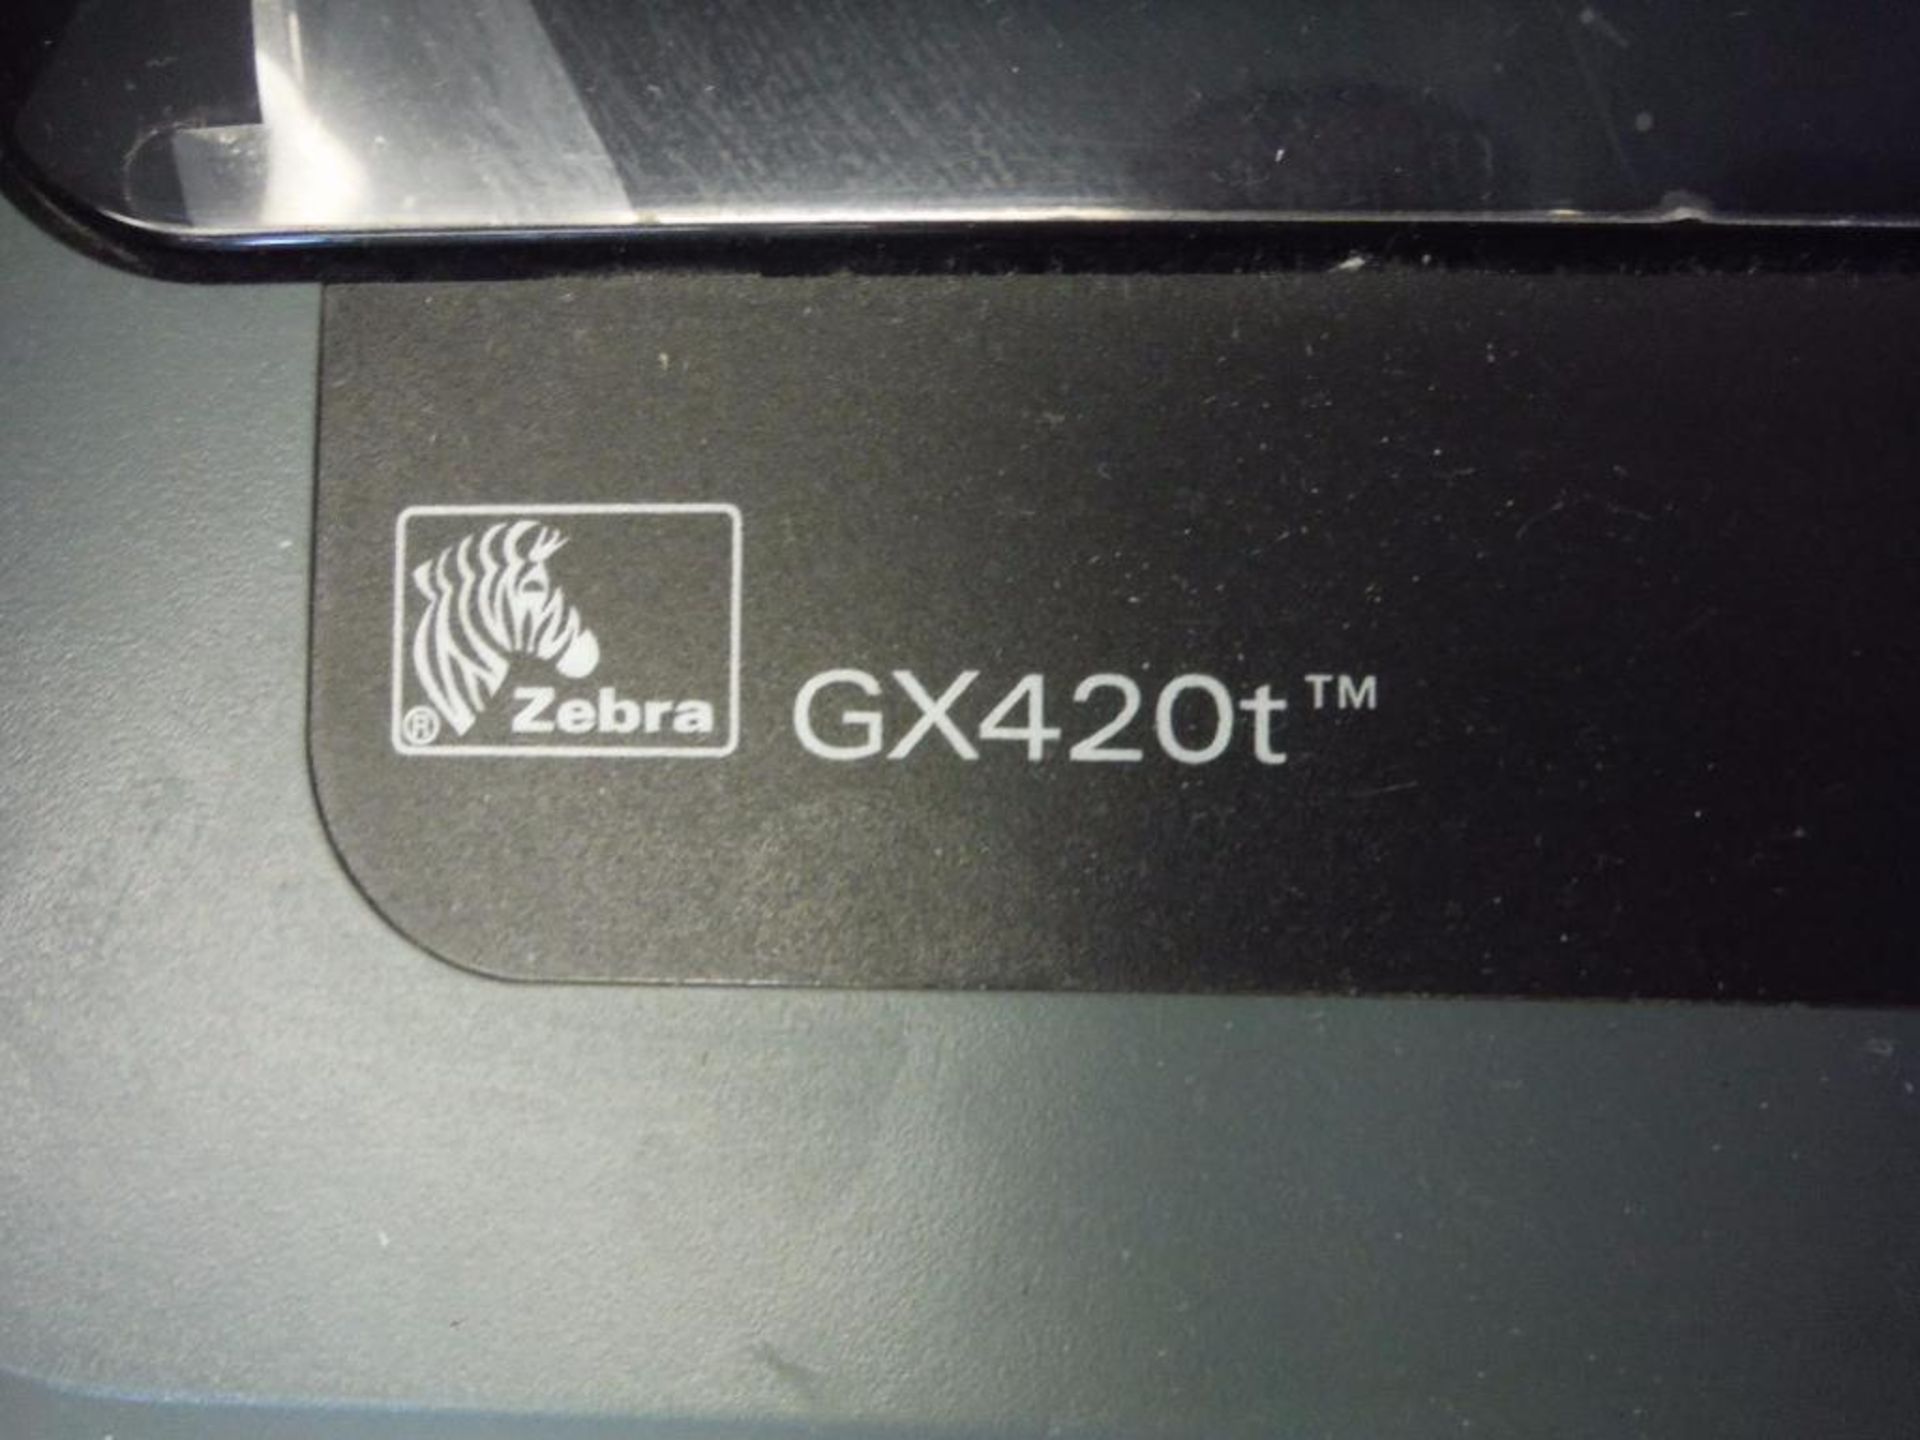 Zebra thermal printer, Model GX420T ** Rigging Fee: $10 ** - Image 3 of 5